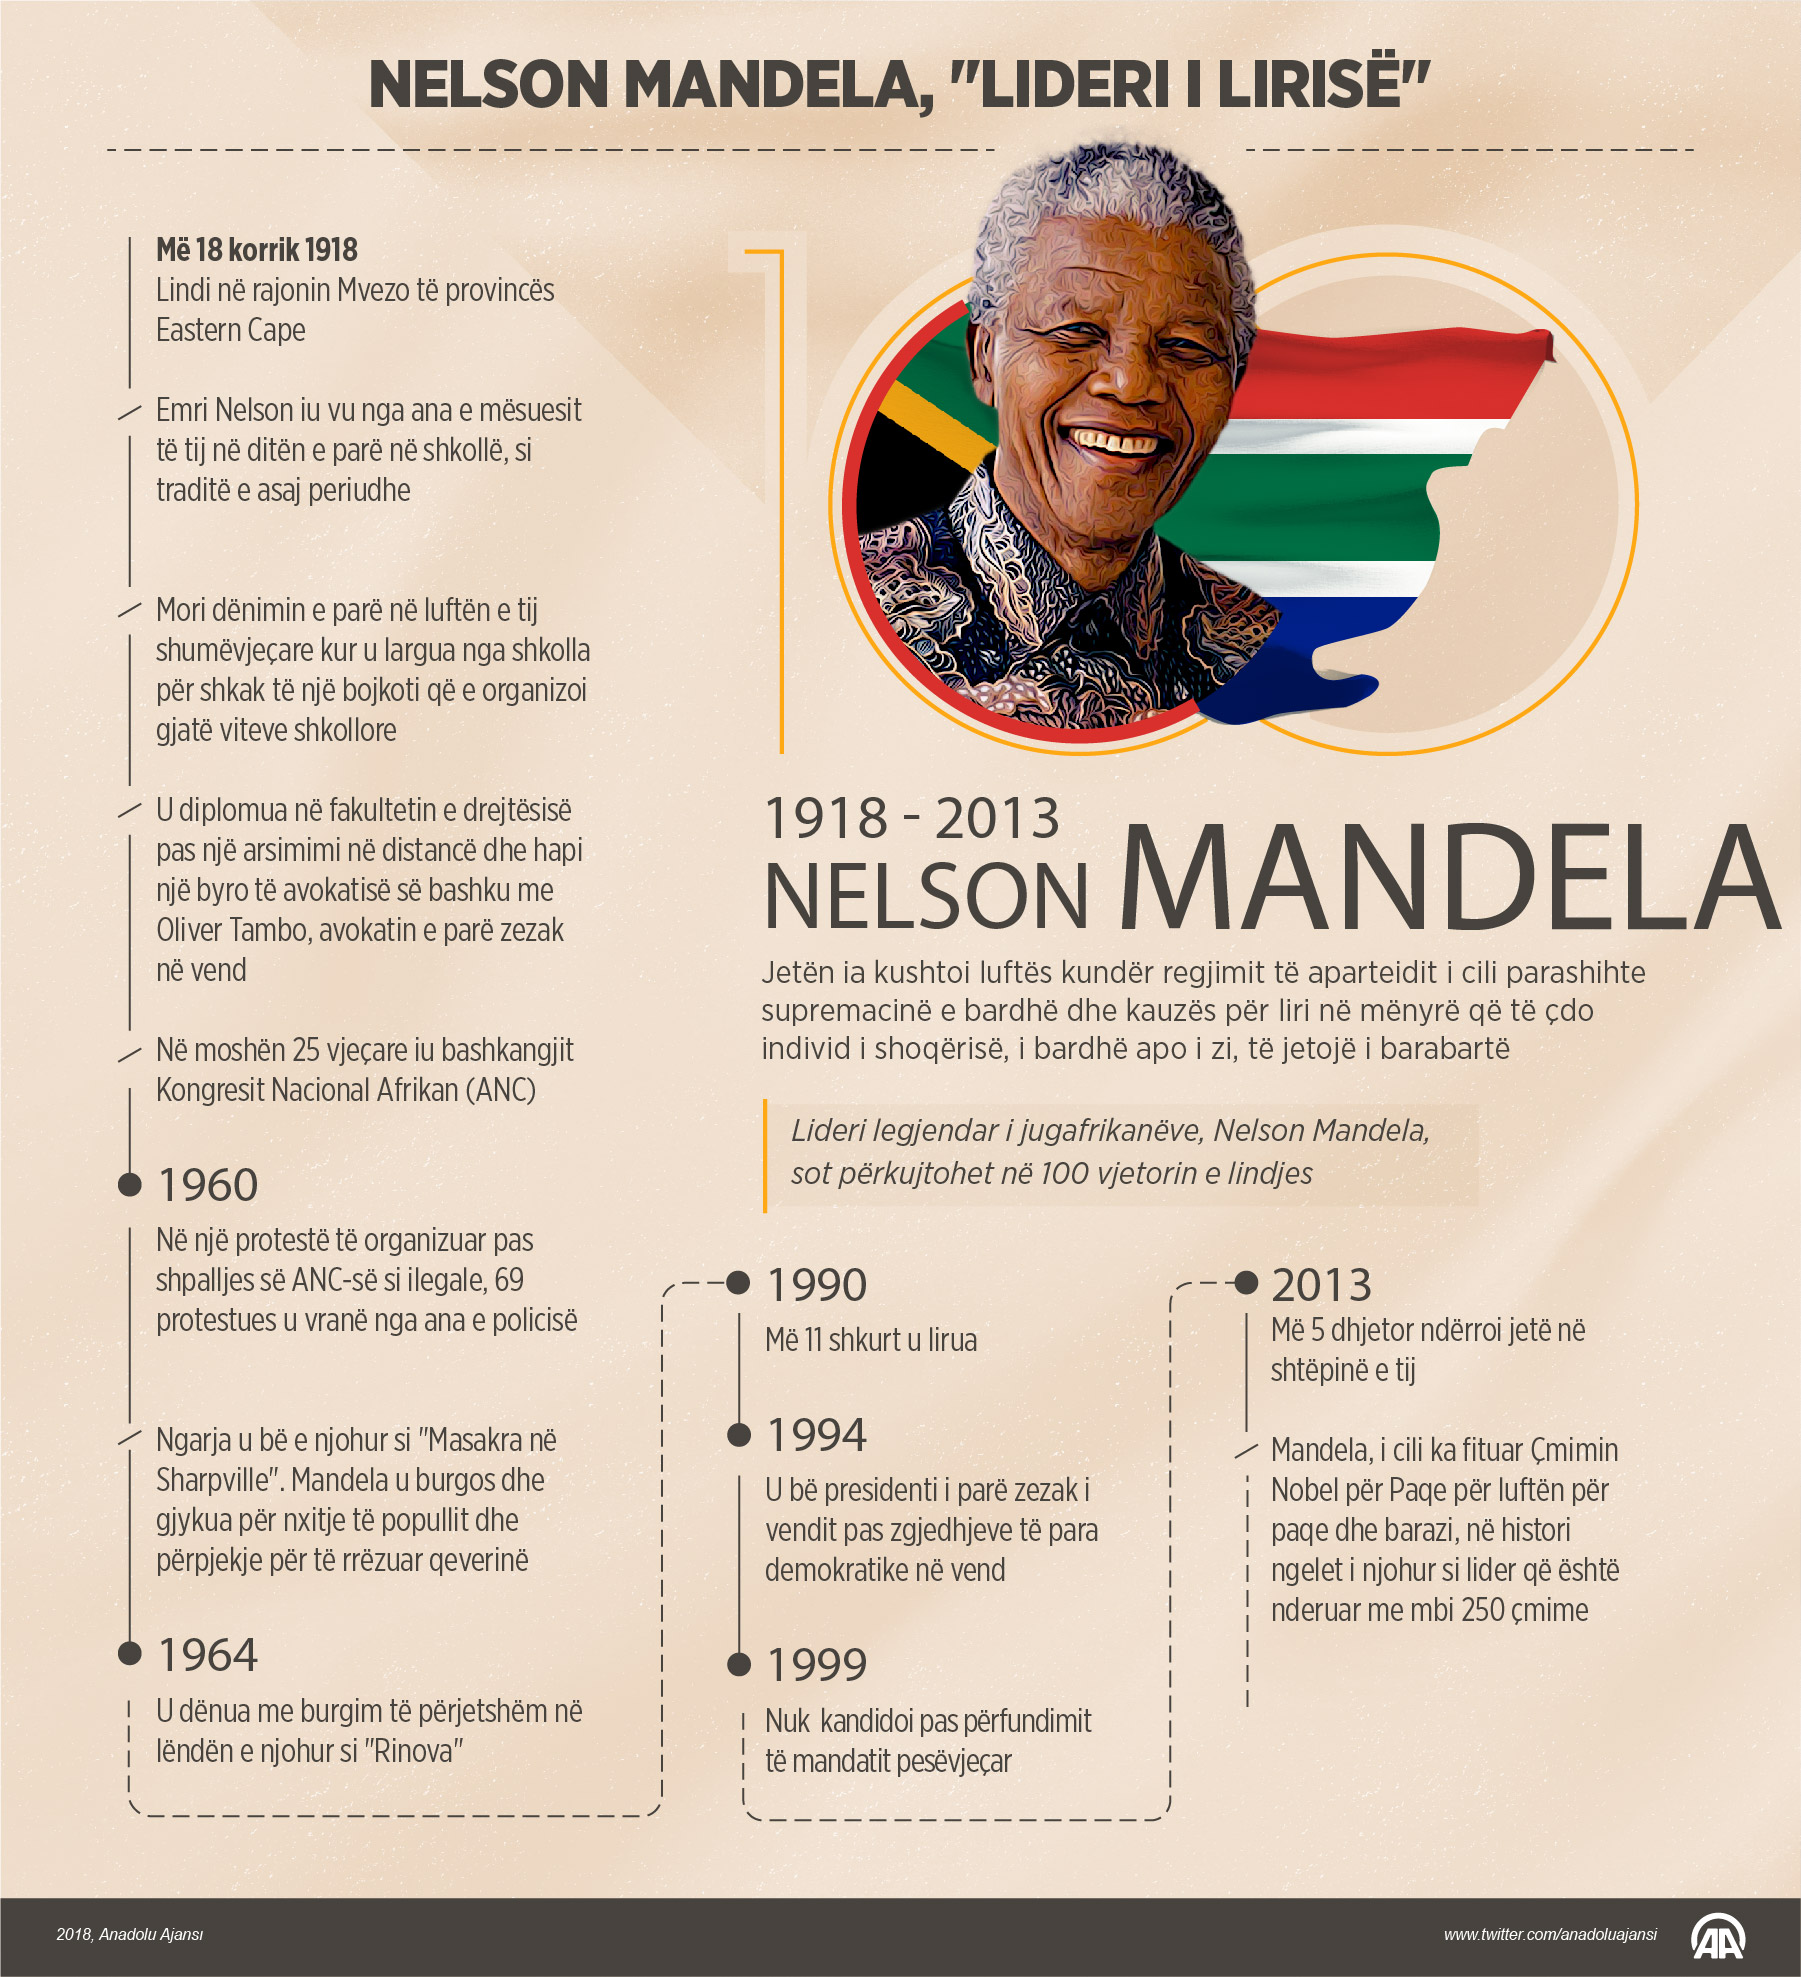 Mandela, lideri i lirisë, përkujtohet në 100 vjetorin e lindjes